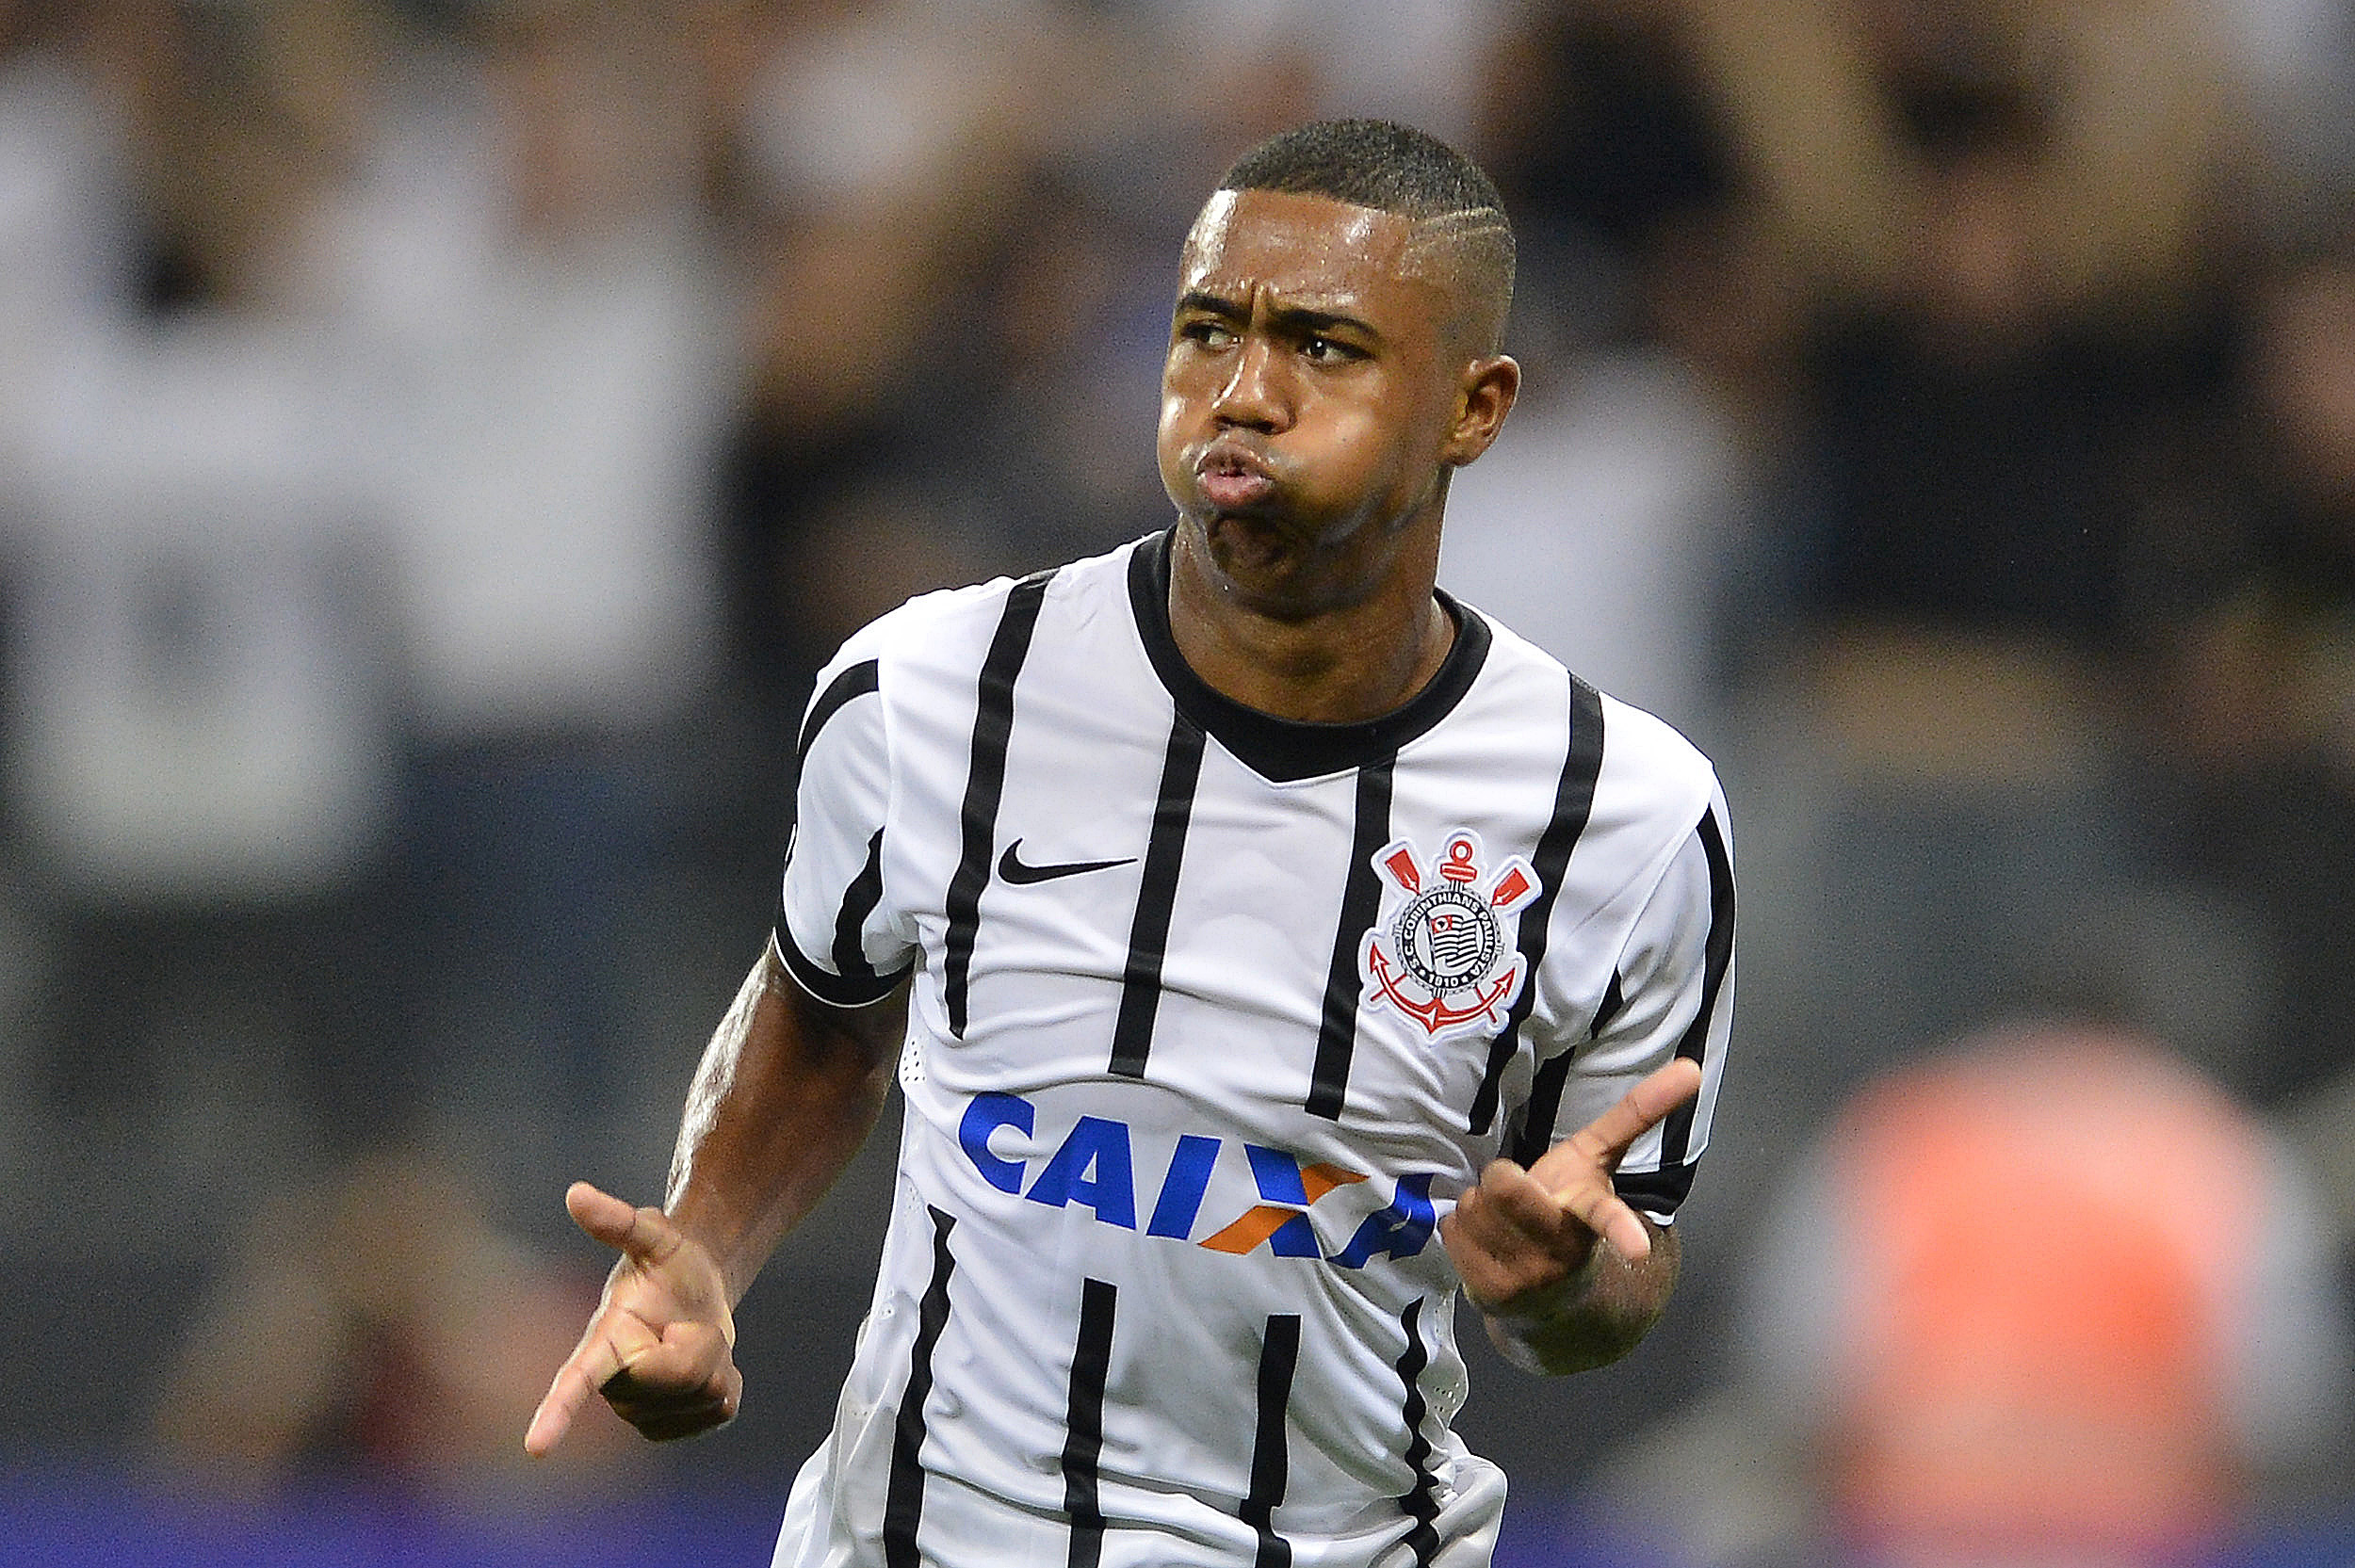 Corinthians goleia o São Bernardo e está na final da Copa Paulista